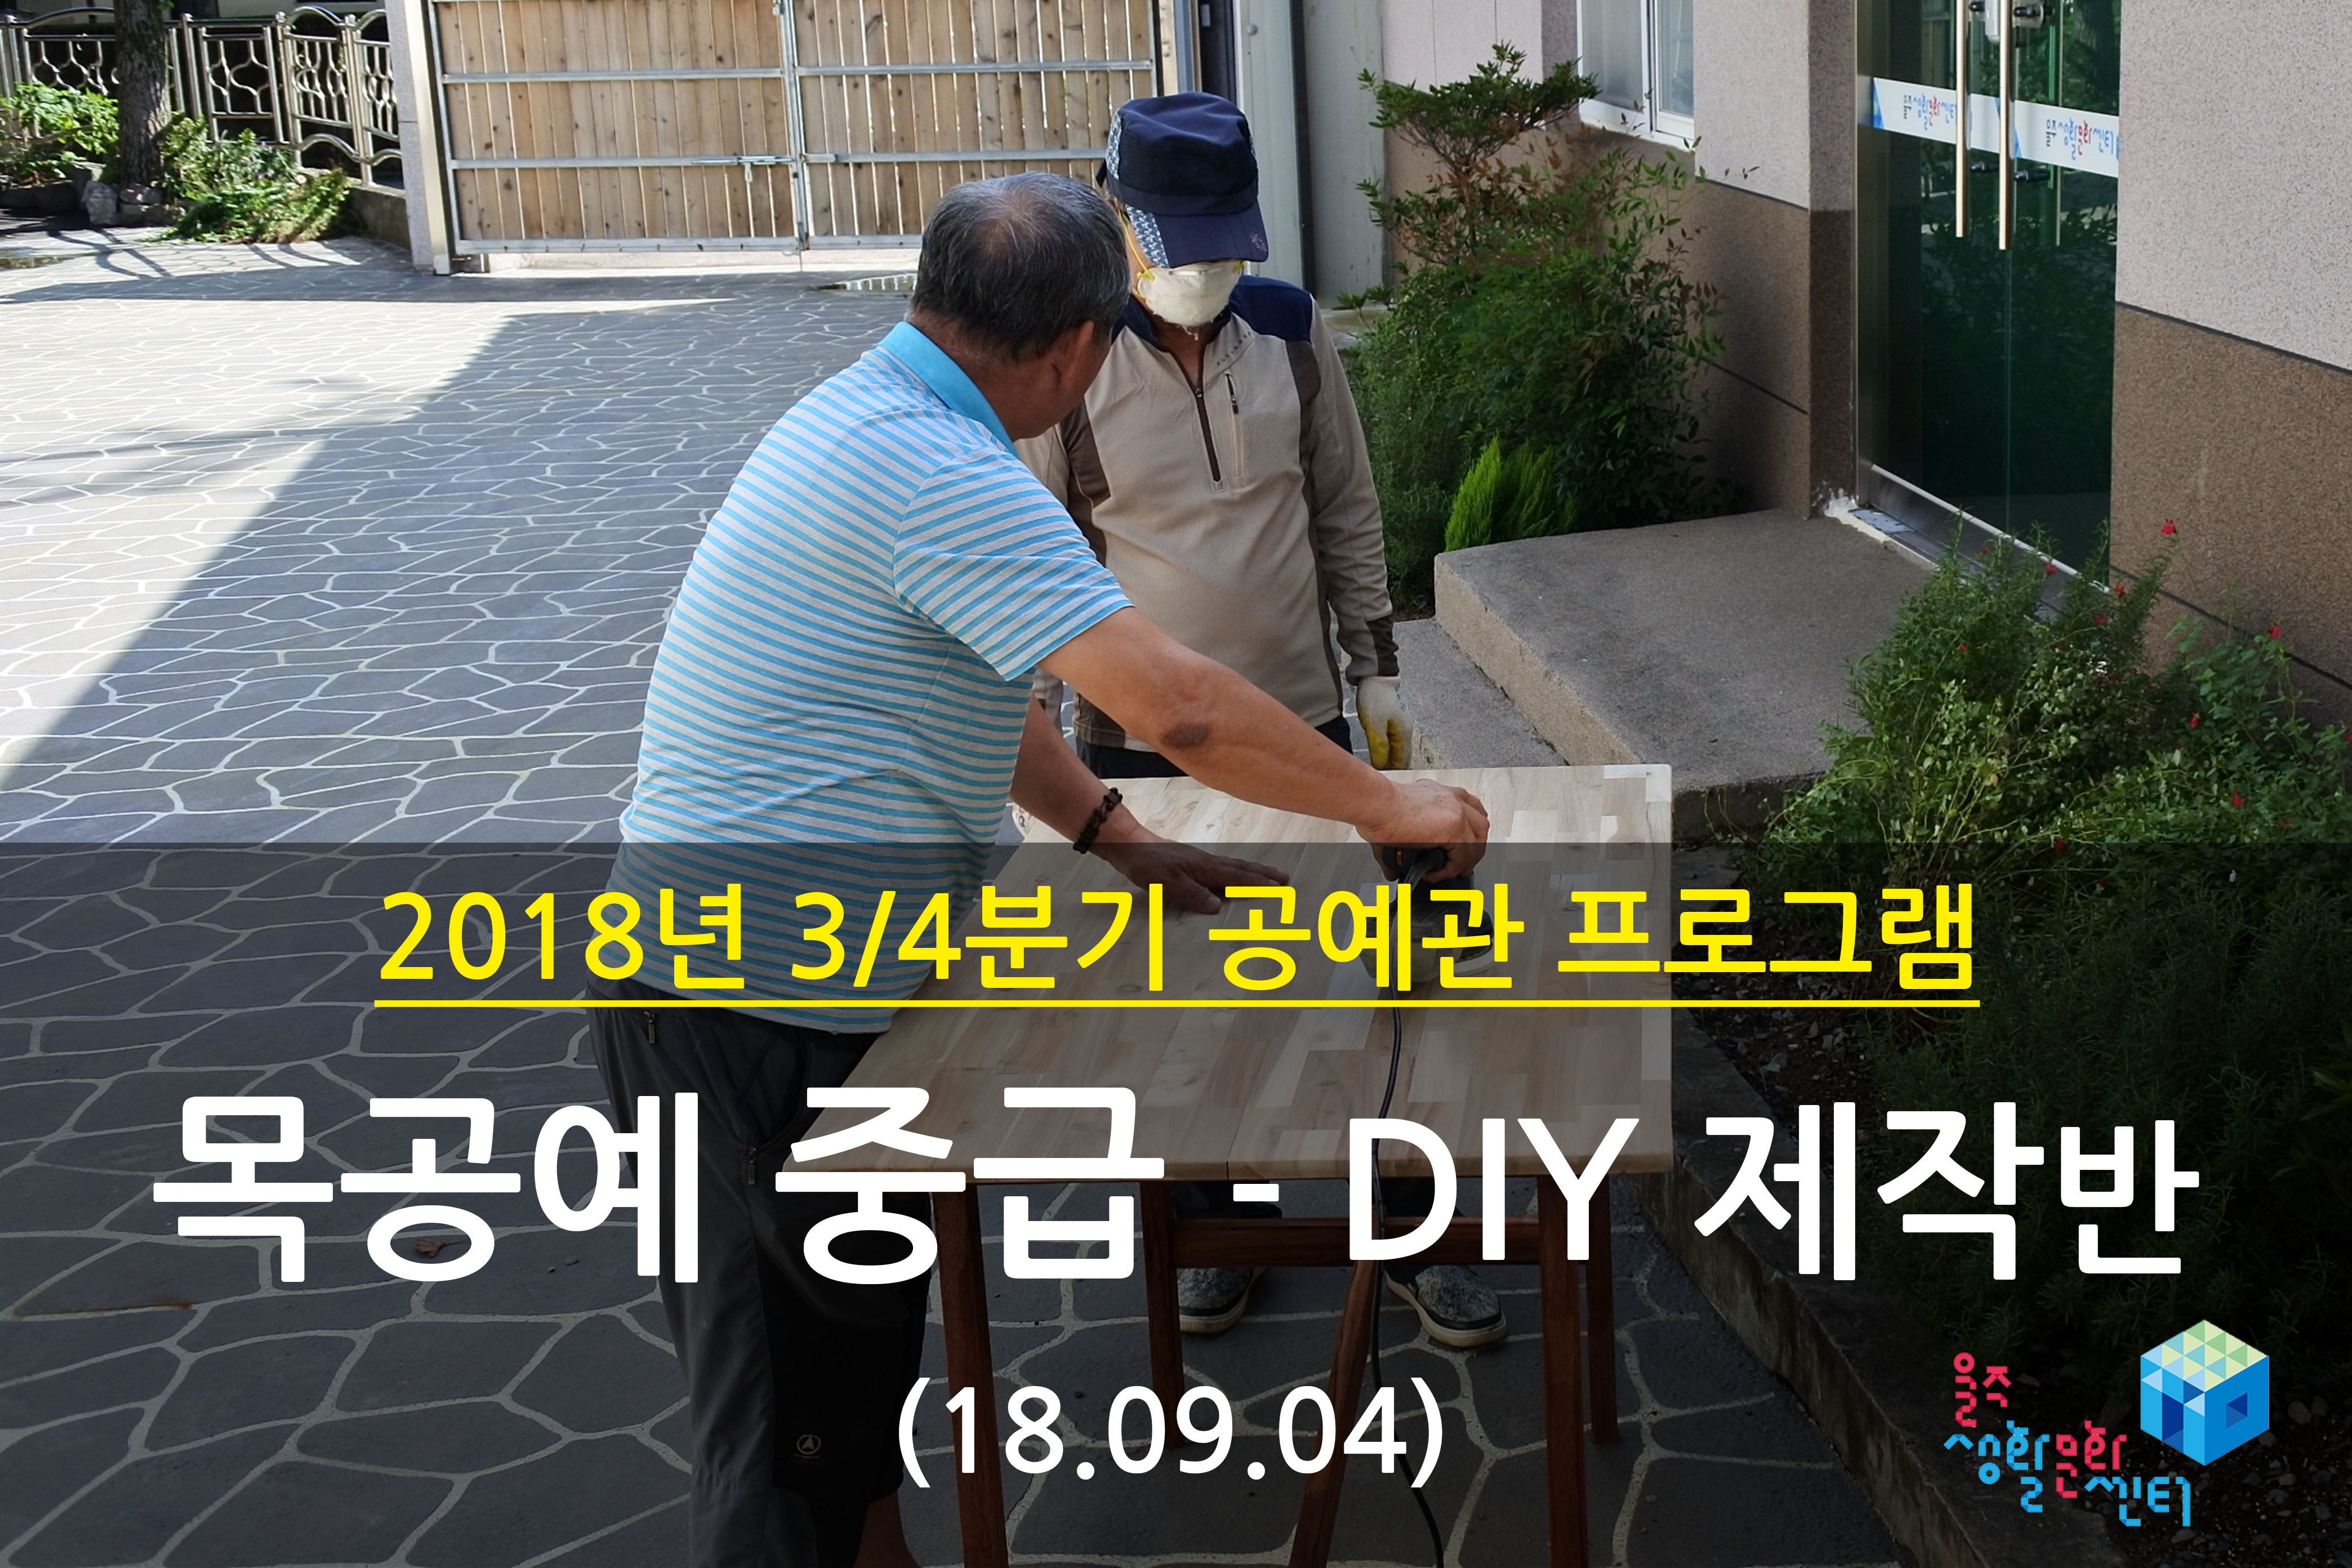 2018.09.04 _ 목공예 중급 - DIY 제작반 _ 3/4분기 10주차 수업